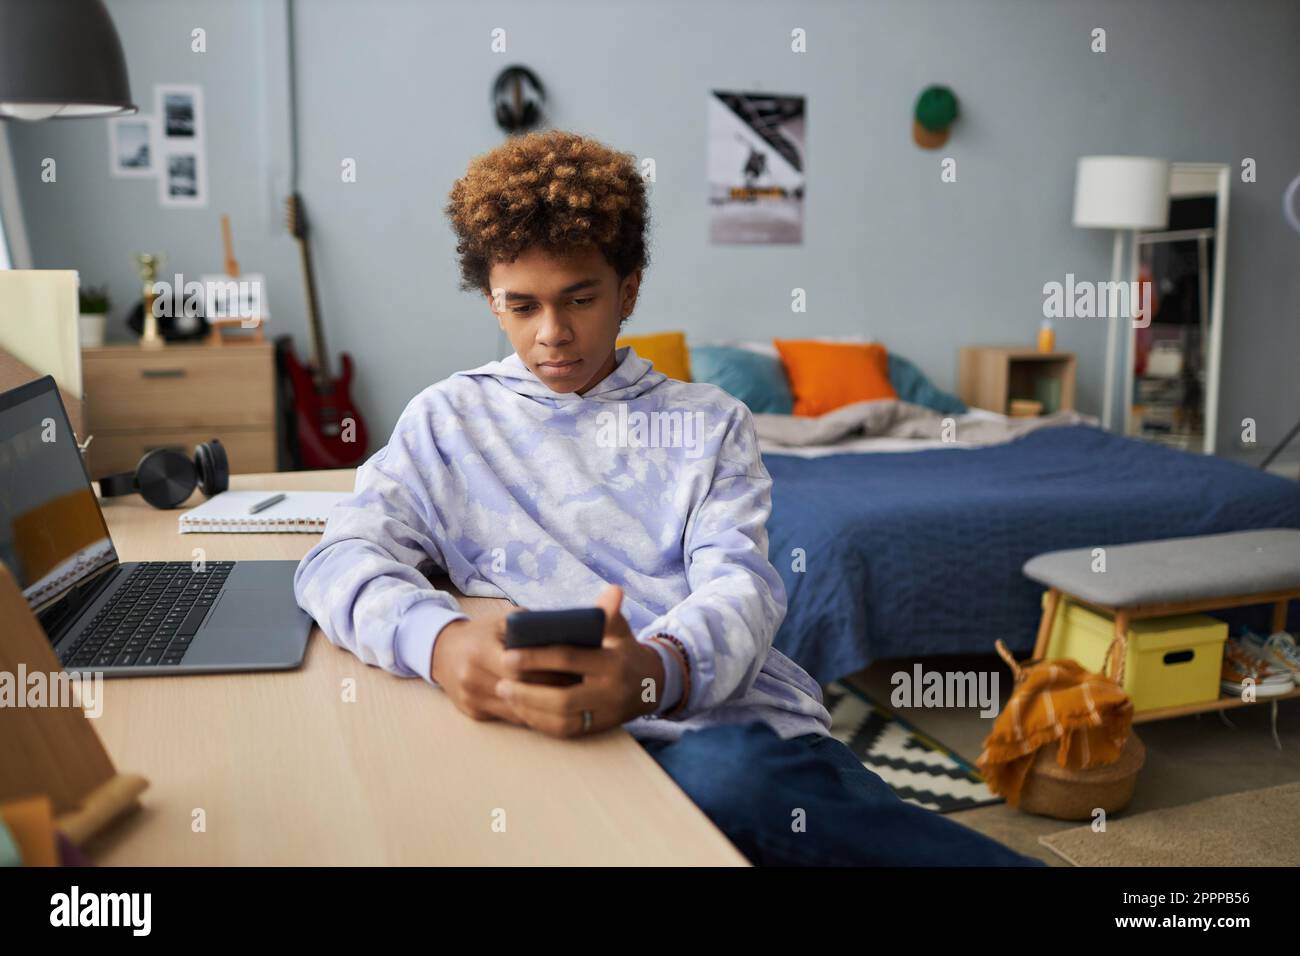 Ein echter Schuljunge in einem Hoodie, der auf den Smartphone-Bildschirm schaut, während er sich mit dem Laptop ein Online-Video am Schreibtisch ansieht und sich dabei ein Doppelbett mit Kissen ansieht Stockfoto